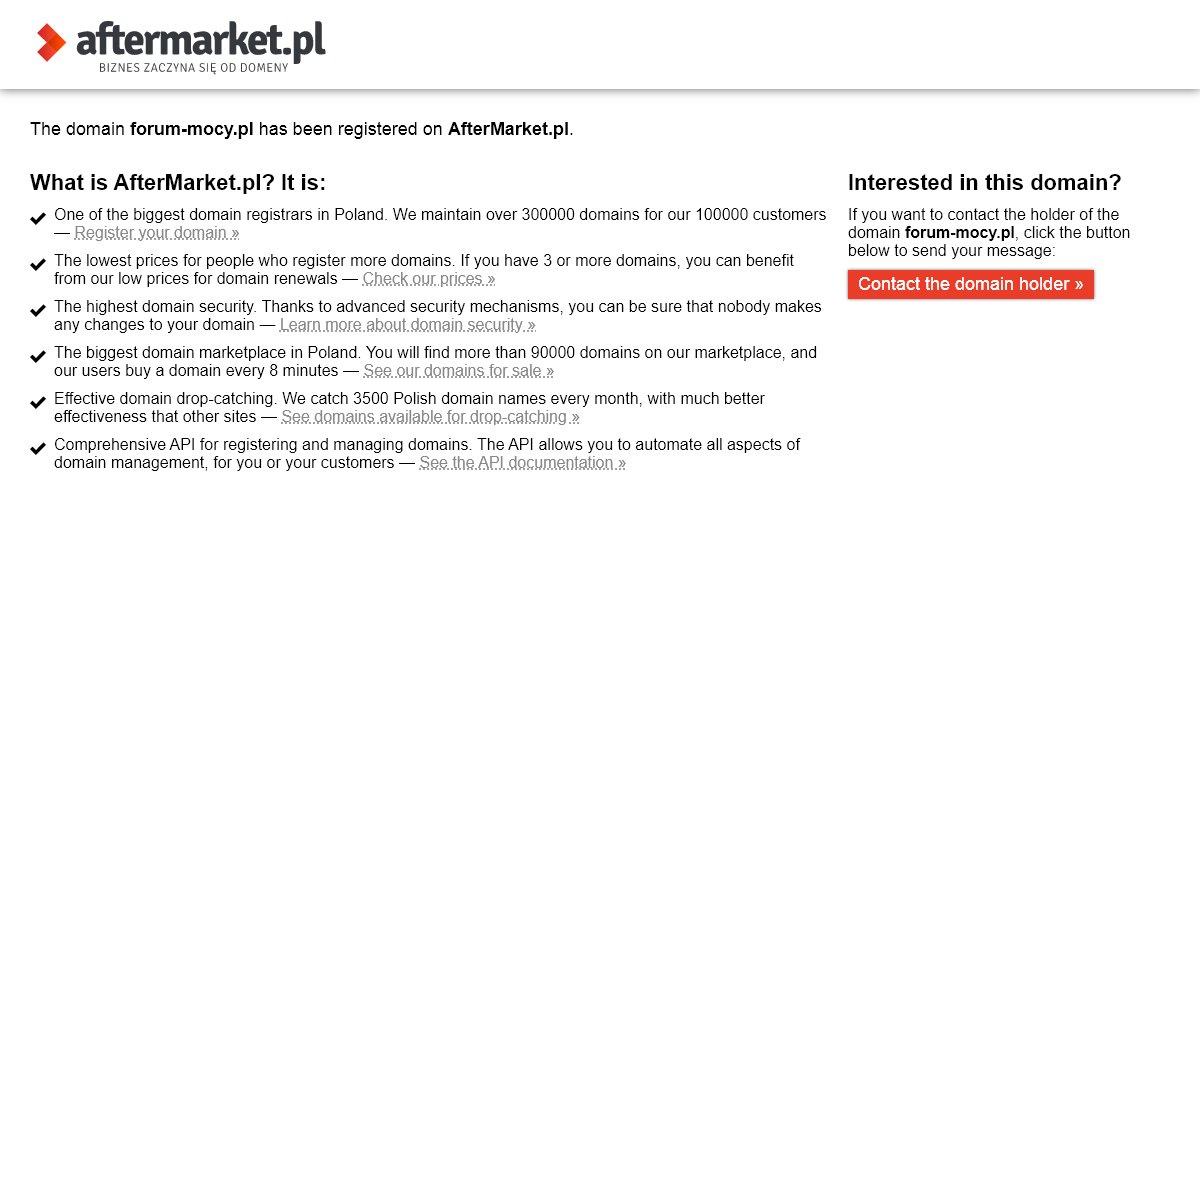 AfterMarket.pl -- domain forum-mocy.pl